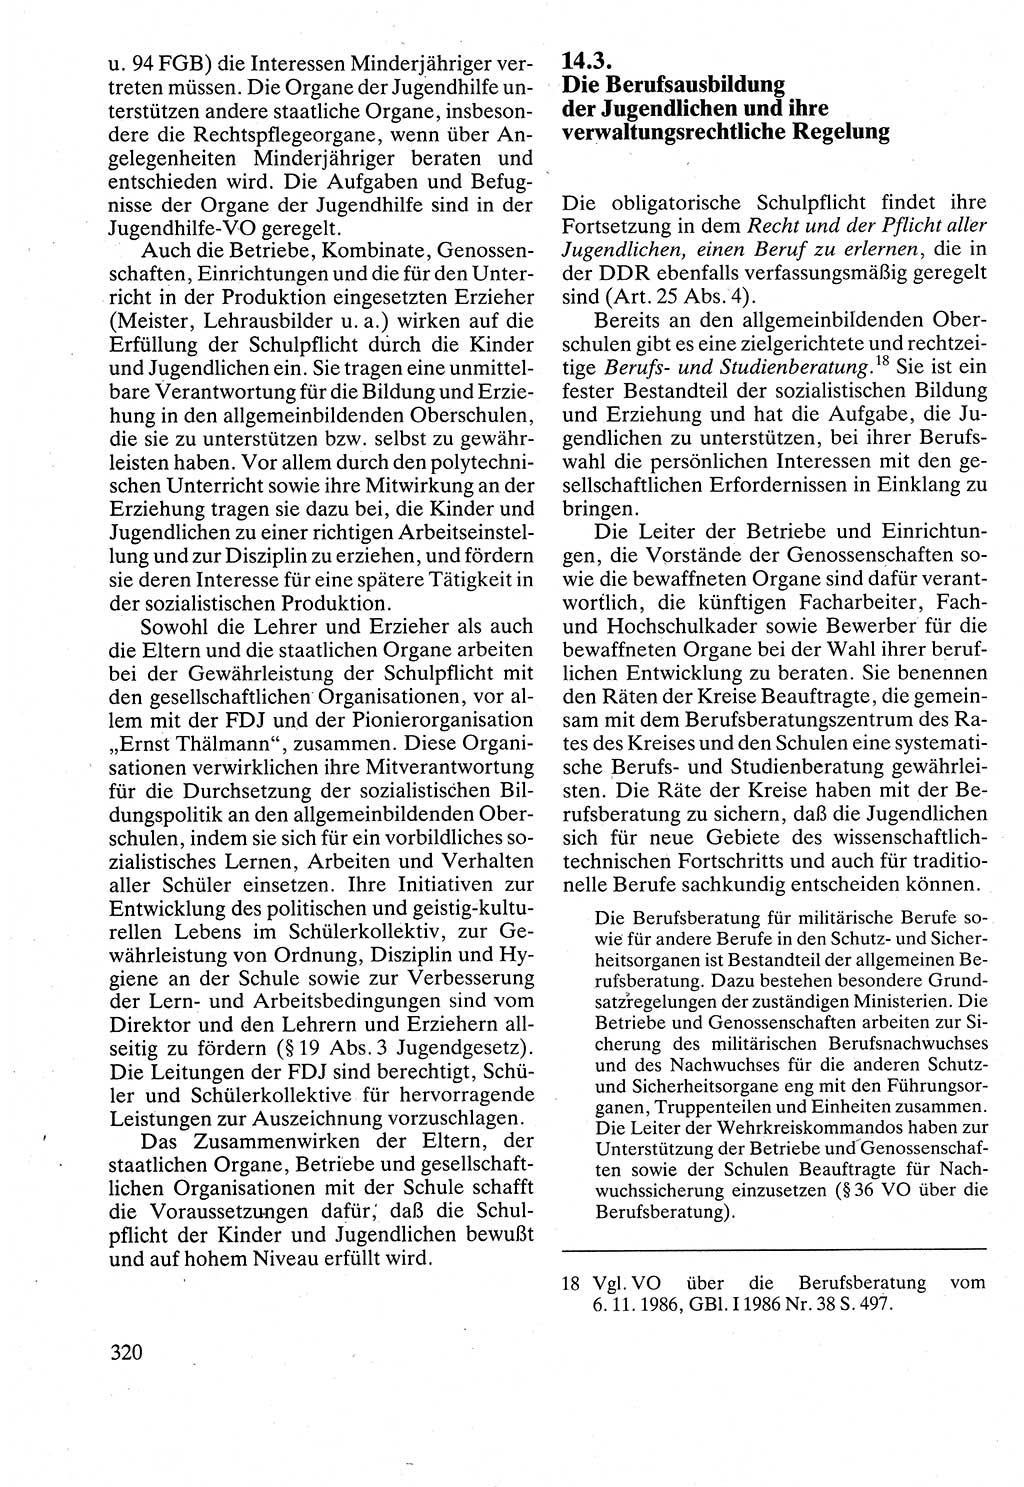 Verwaltungsrecht [Deutsche Demokratische Republik (DDR)], Lehrbuch 1988, Seite 320 (Verw.-R. DDR Lb. 1988, S. 320)